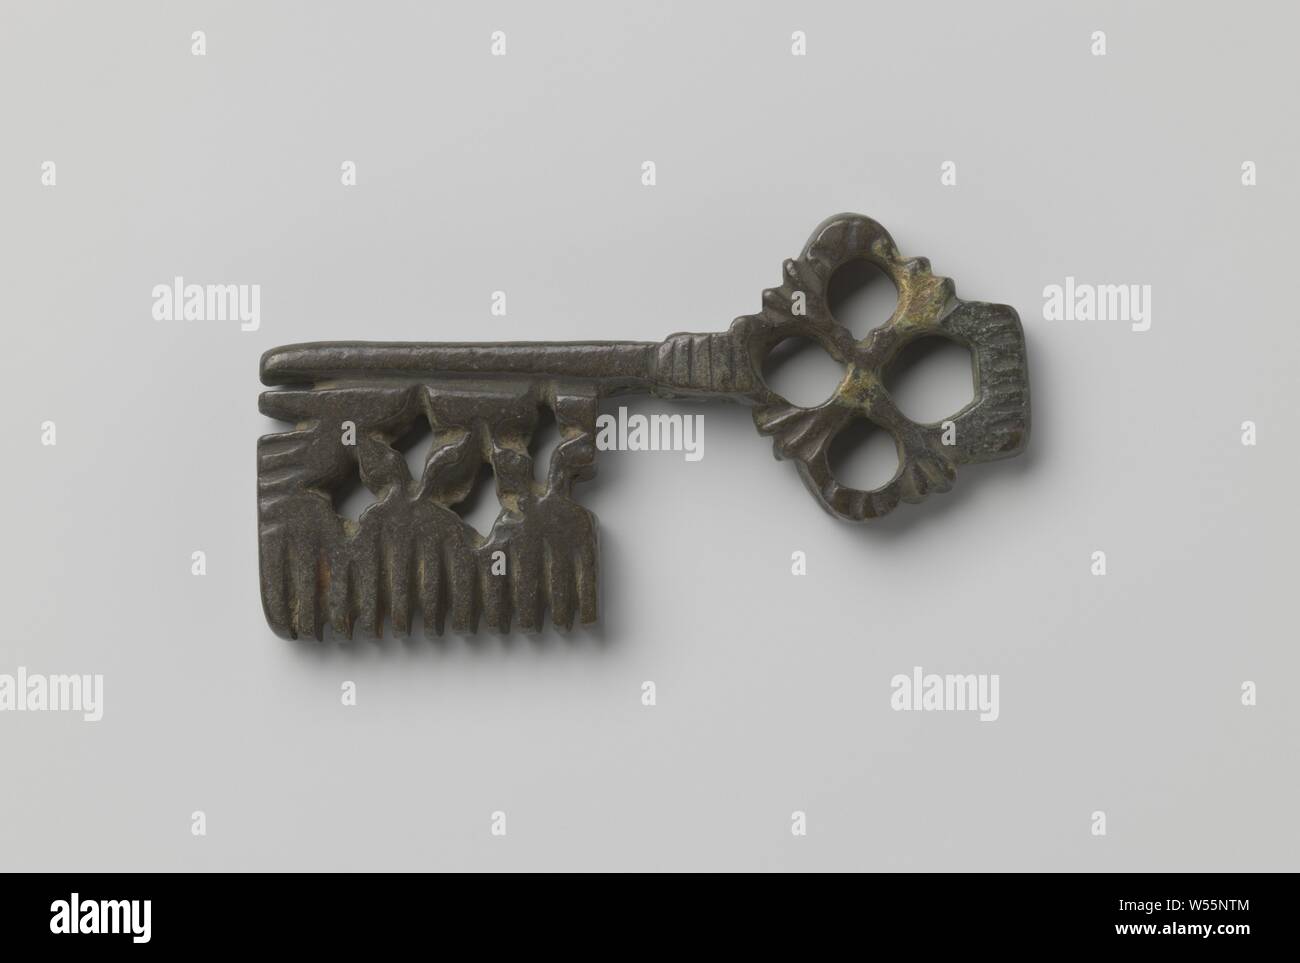 La poignée de clés qui se compose d'un open a travaillé à quatre feuilles modèle floral et une grande barbe qui a quatre découpes cruciforme et se termine par une forme., ch. 1400 - c. 1950, bronze (métal), l 7,6 cm × w 3 cm Banque D'Images